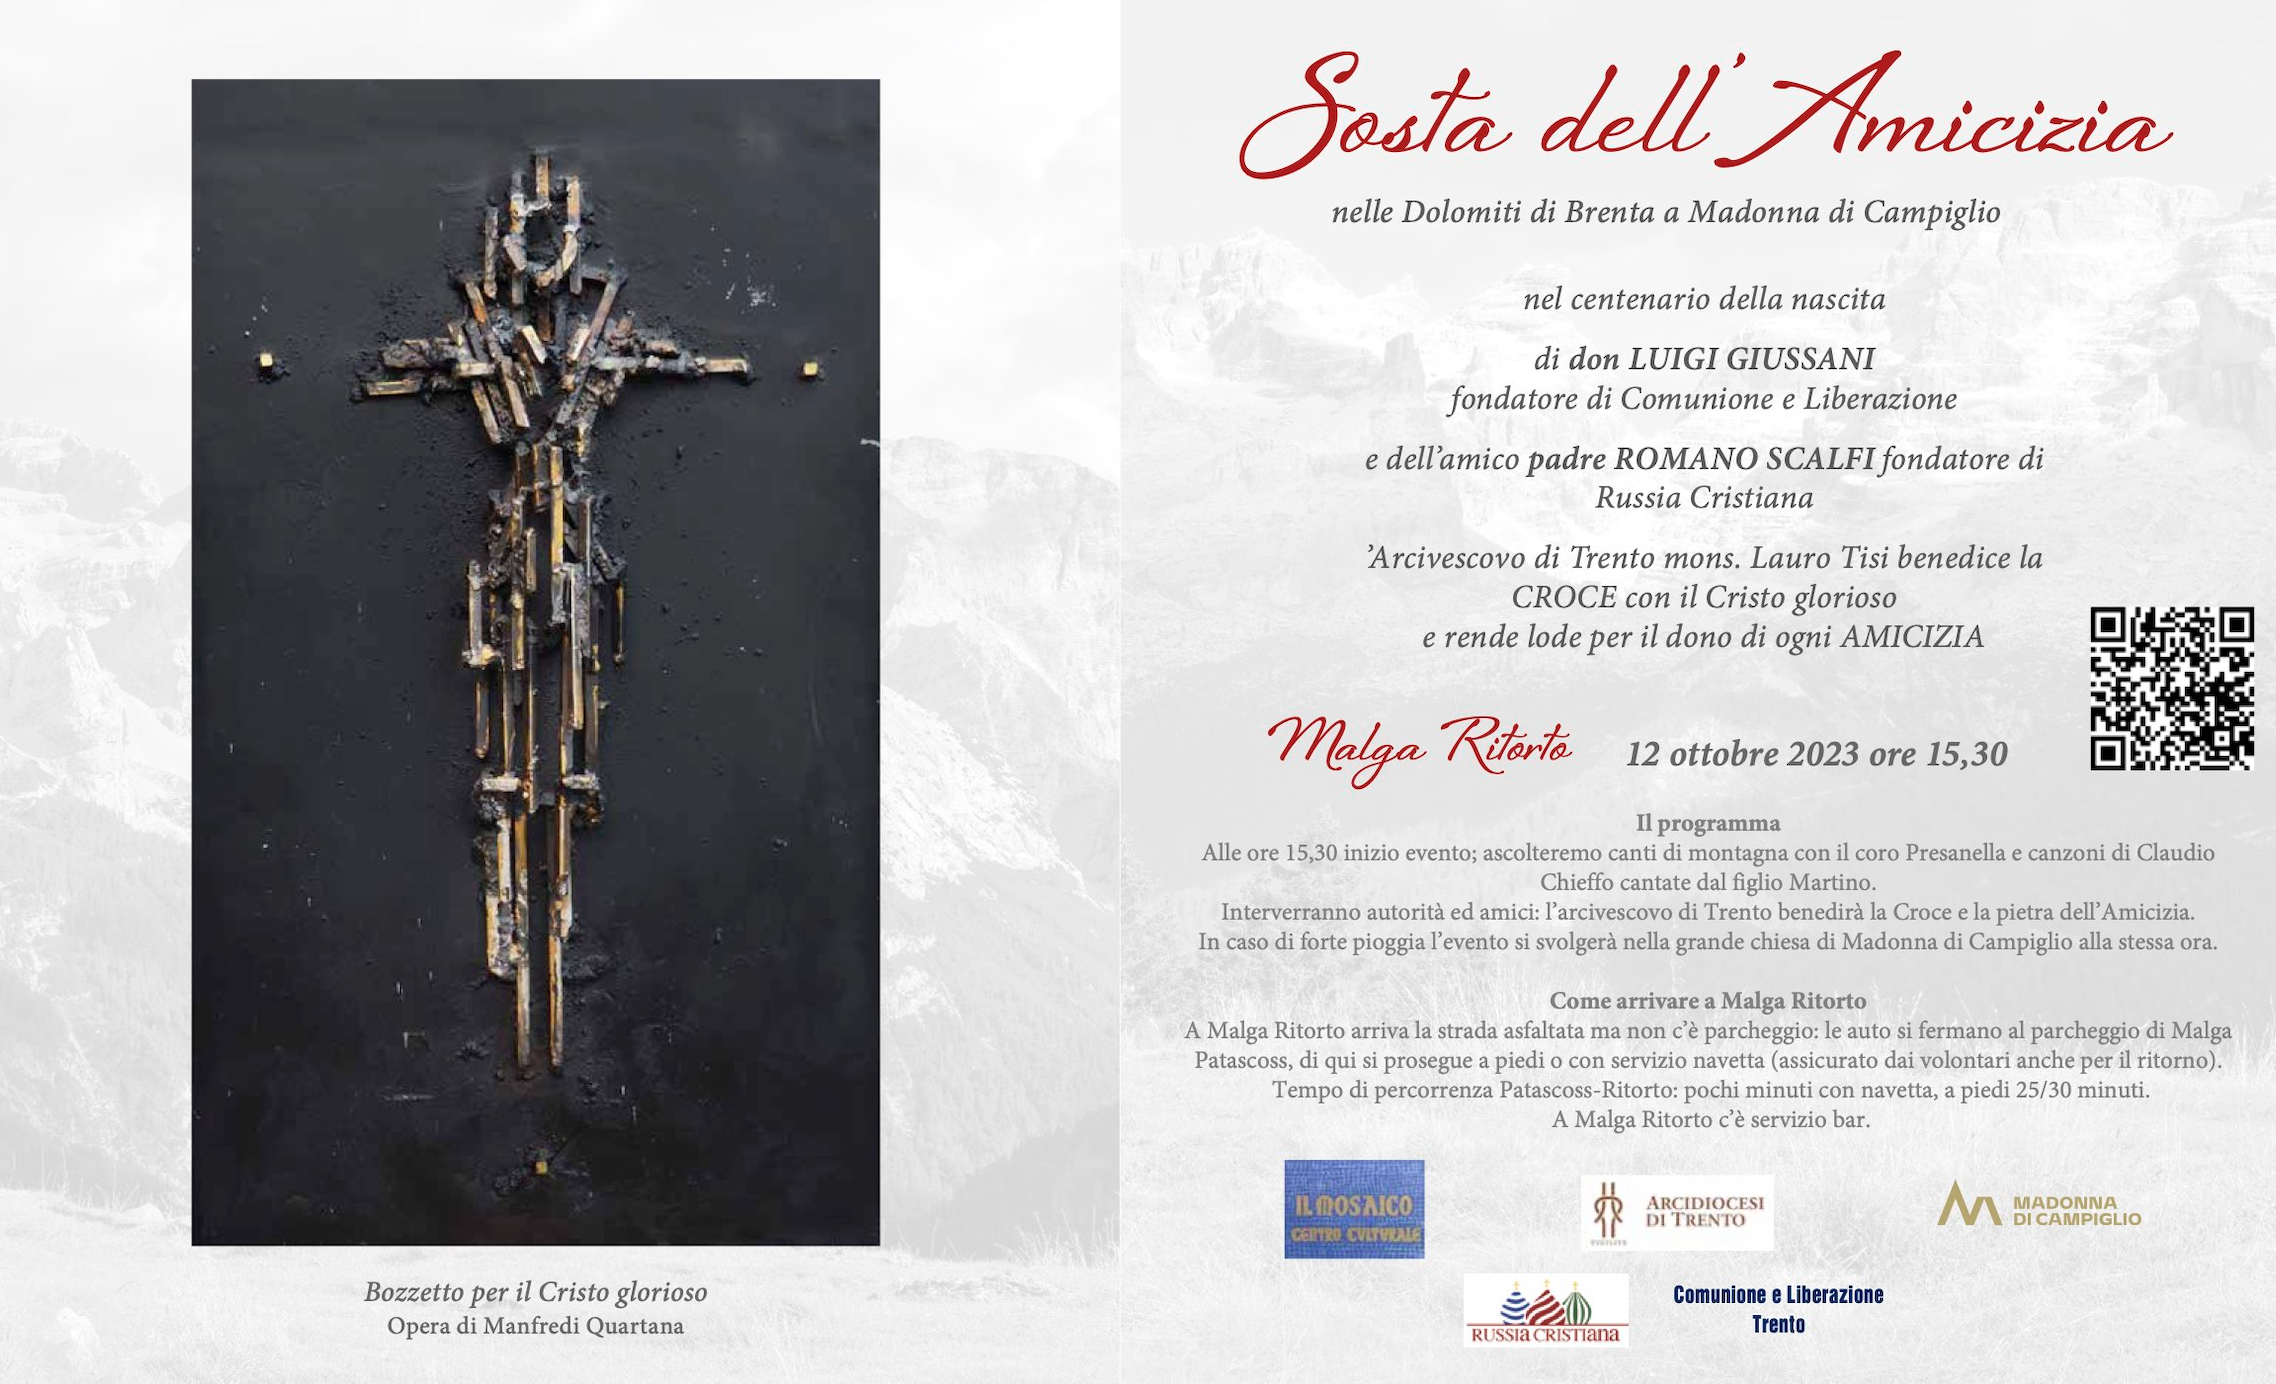 Featured image for “Madonna di Campiglio: “La sosta dell’amicizia””